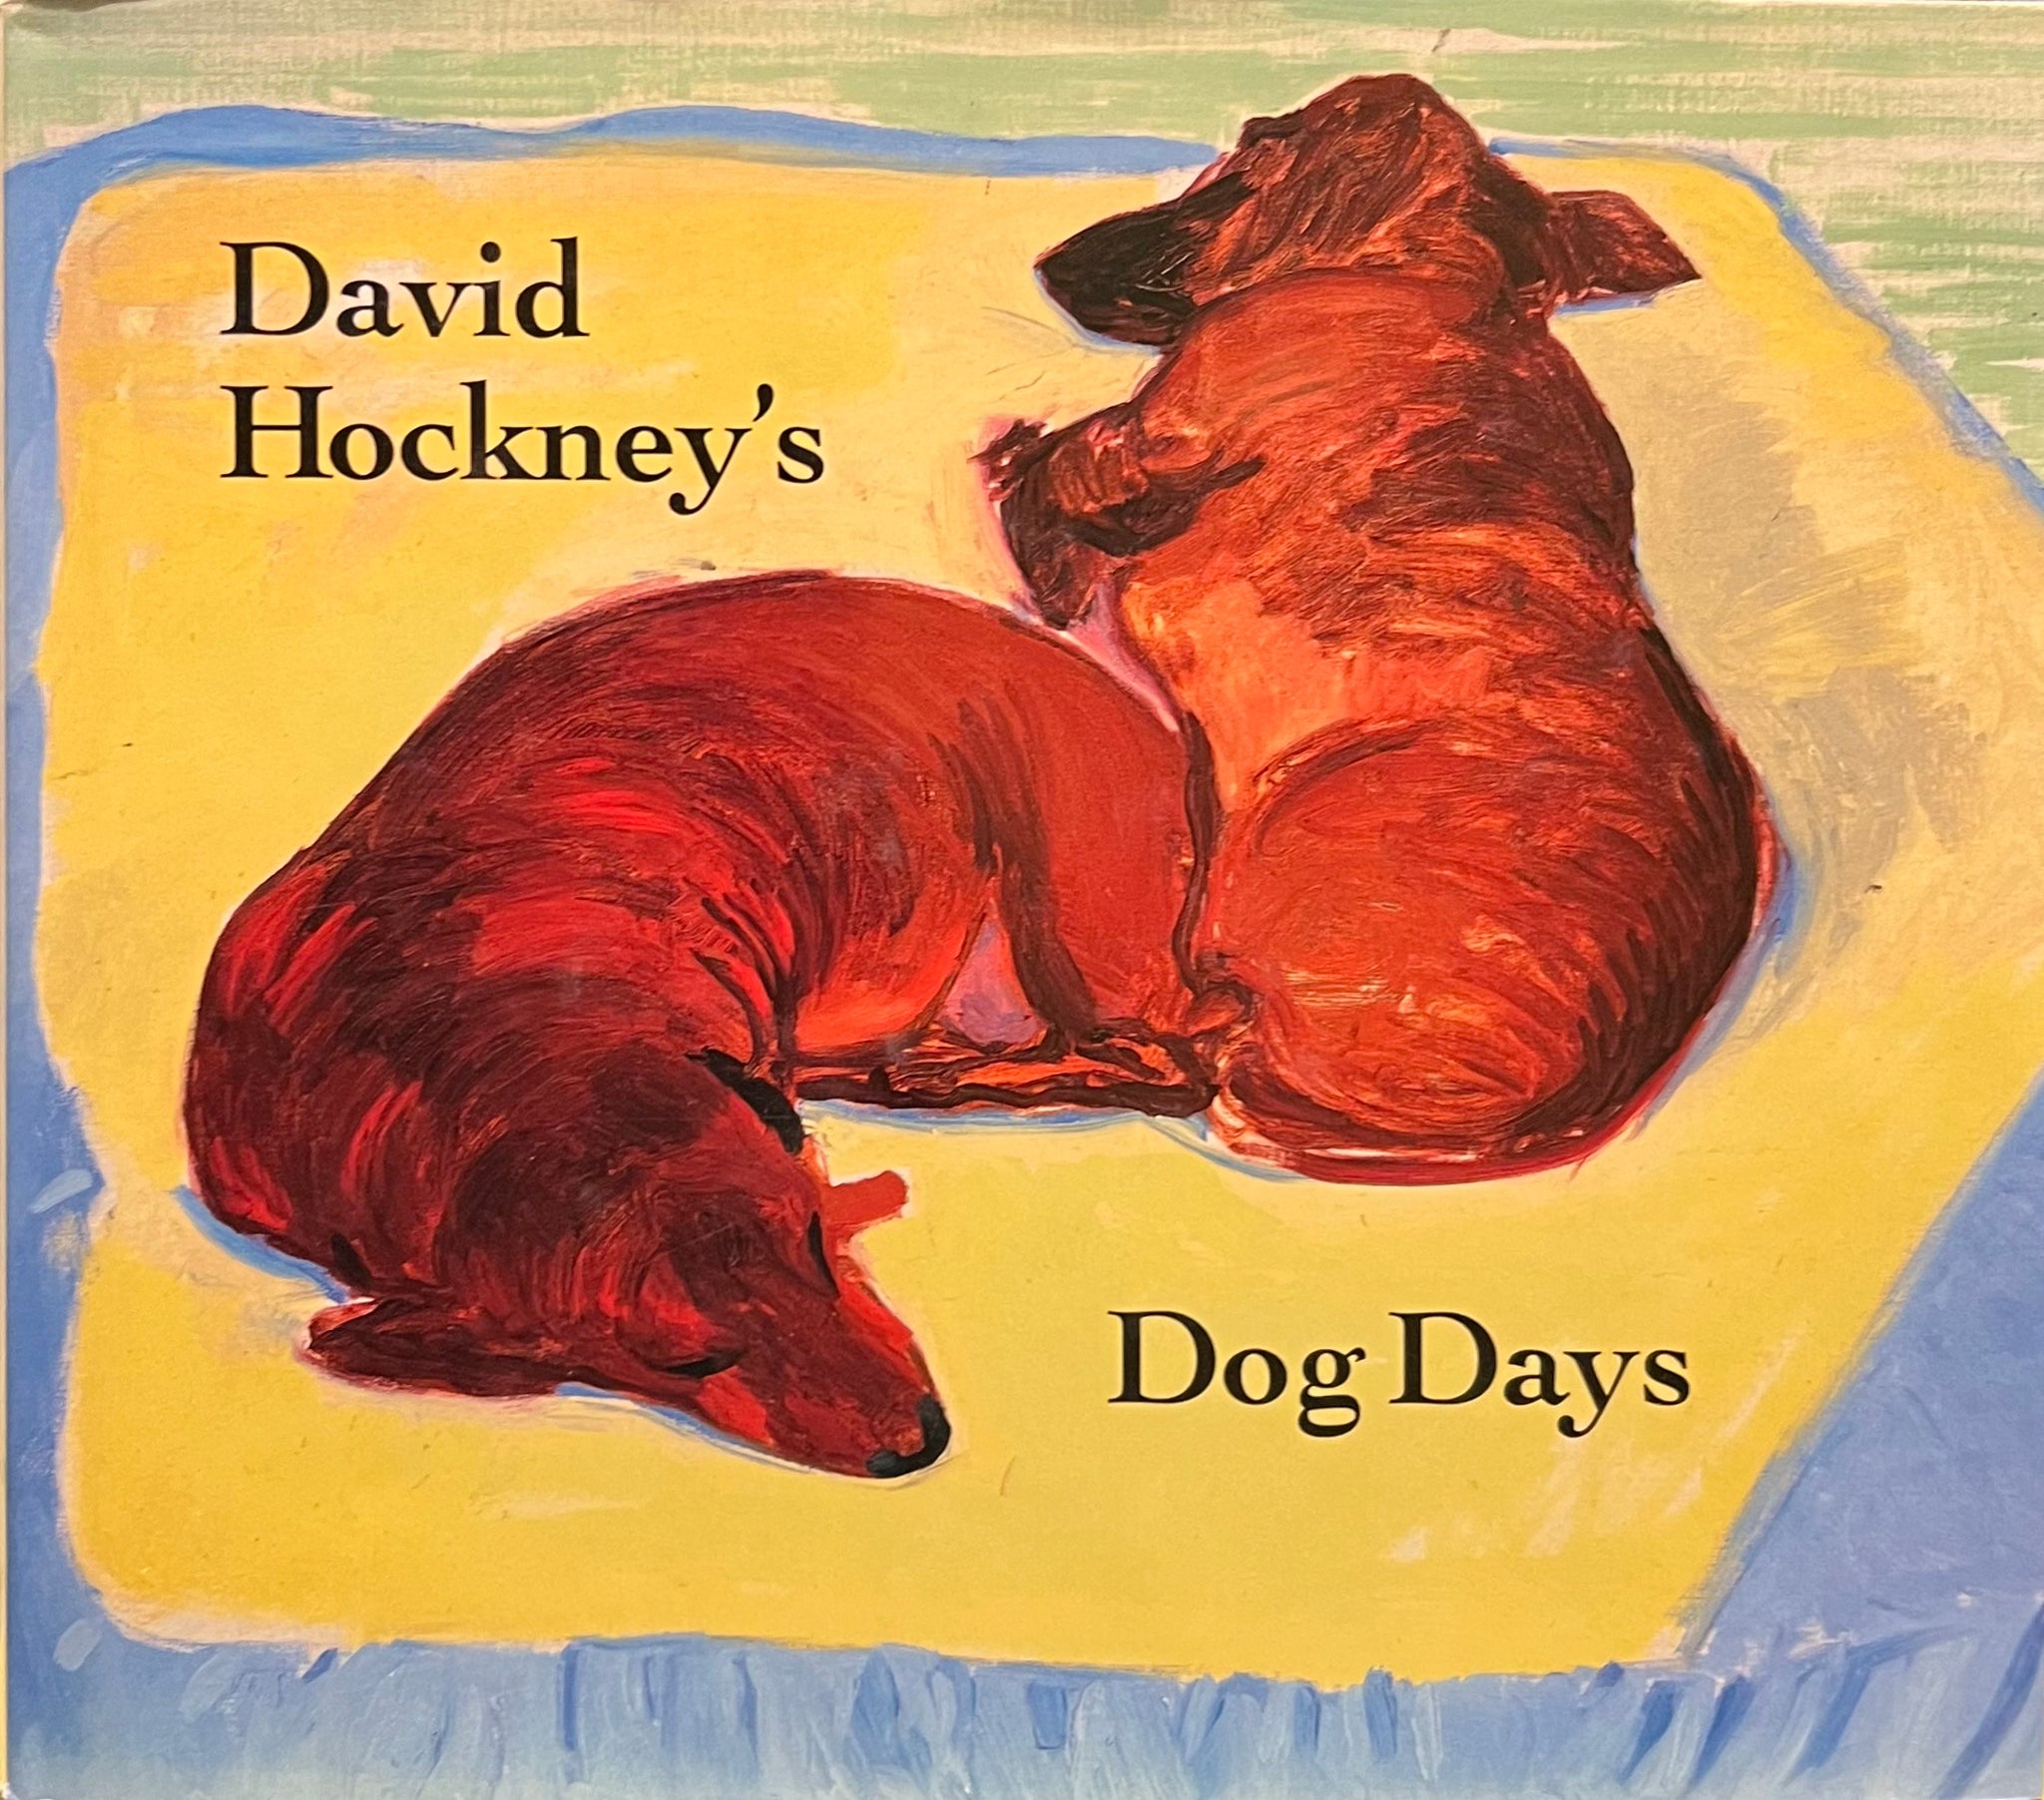 David Hockney’s Dog Days